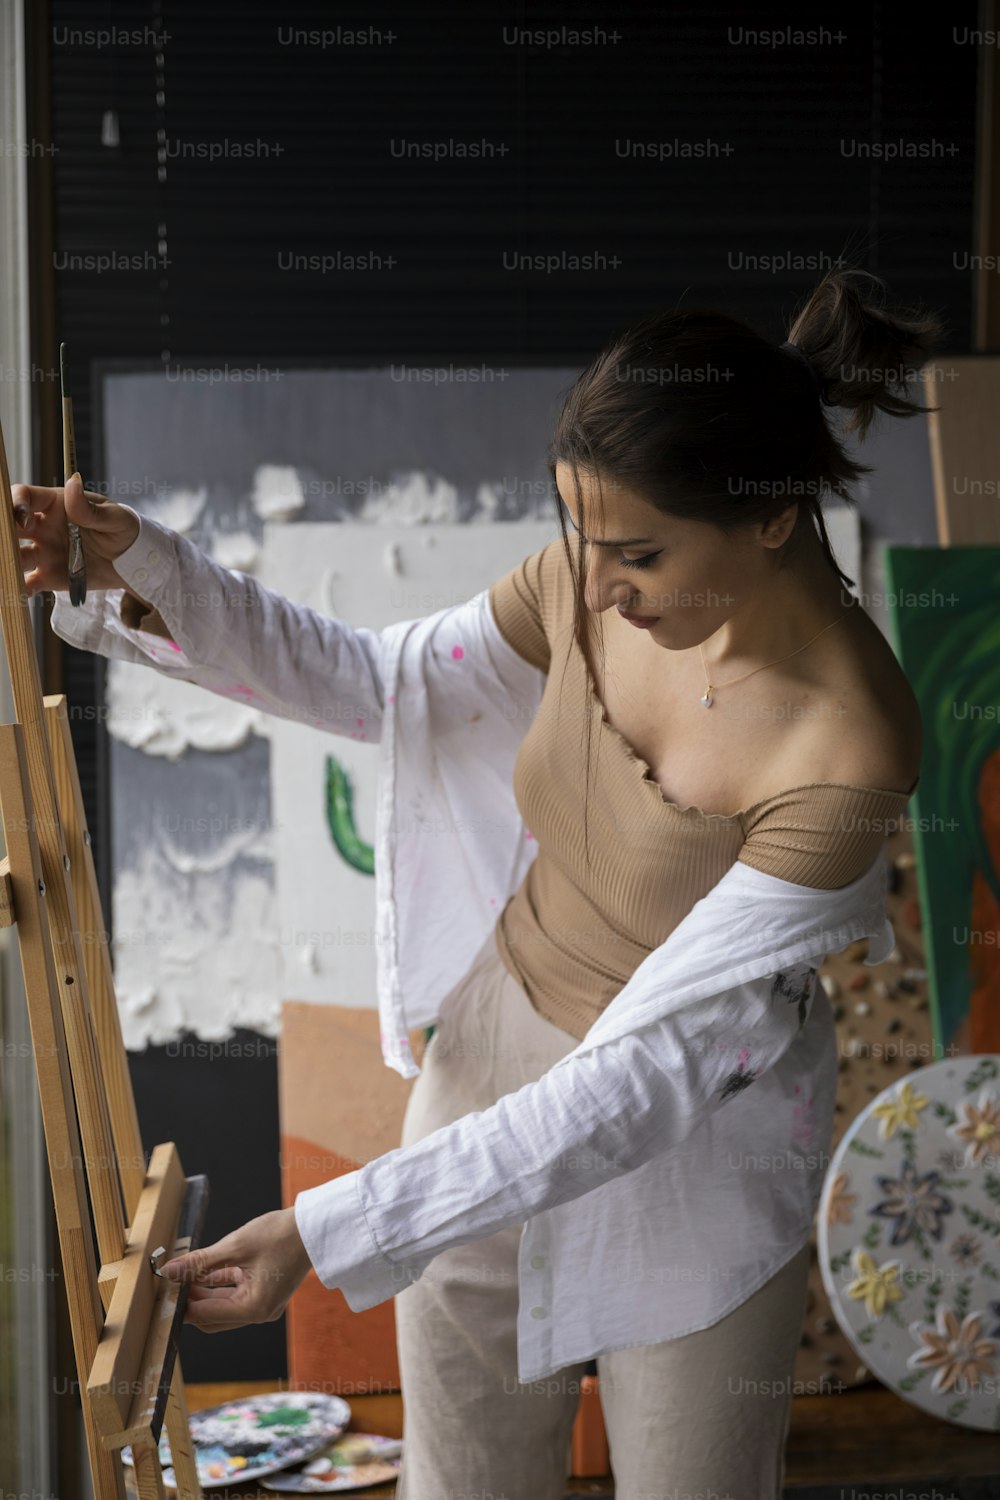 Eine Frau malt ein Bild auf eine Staffelei